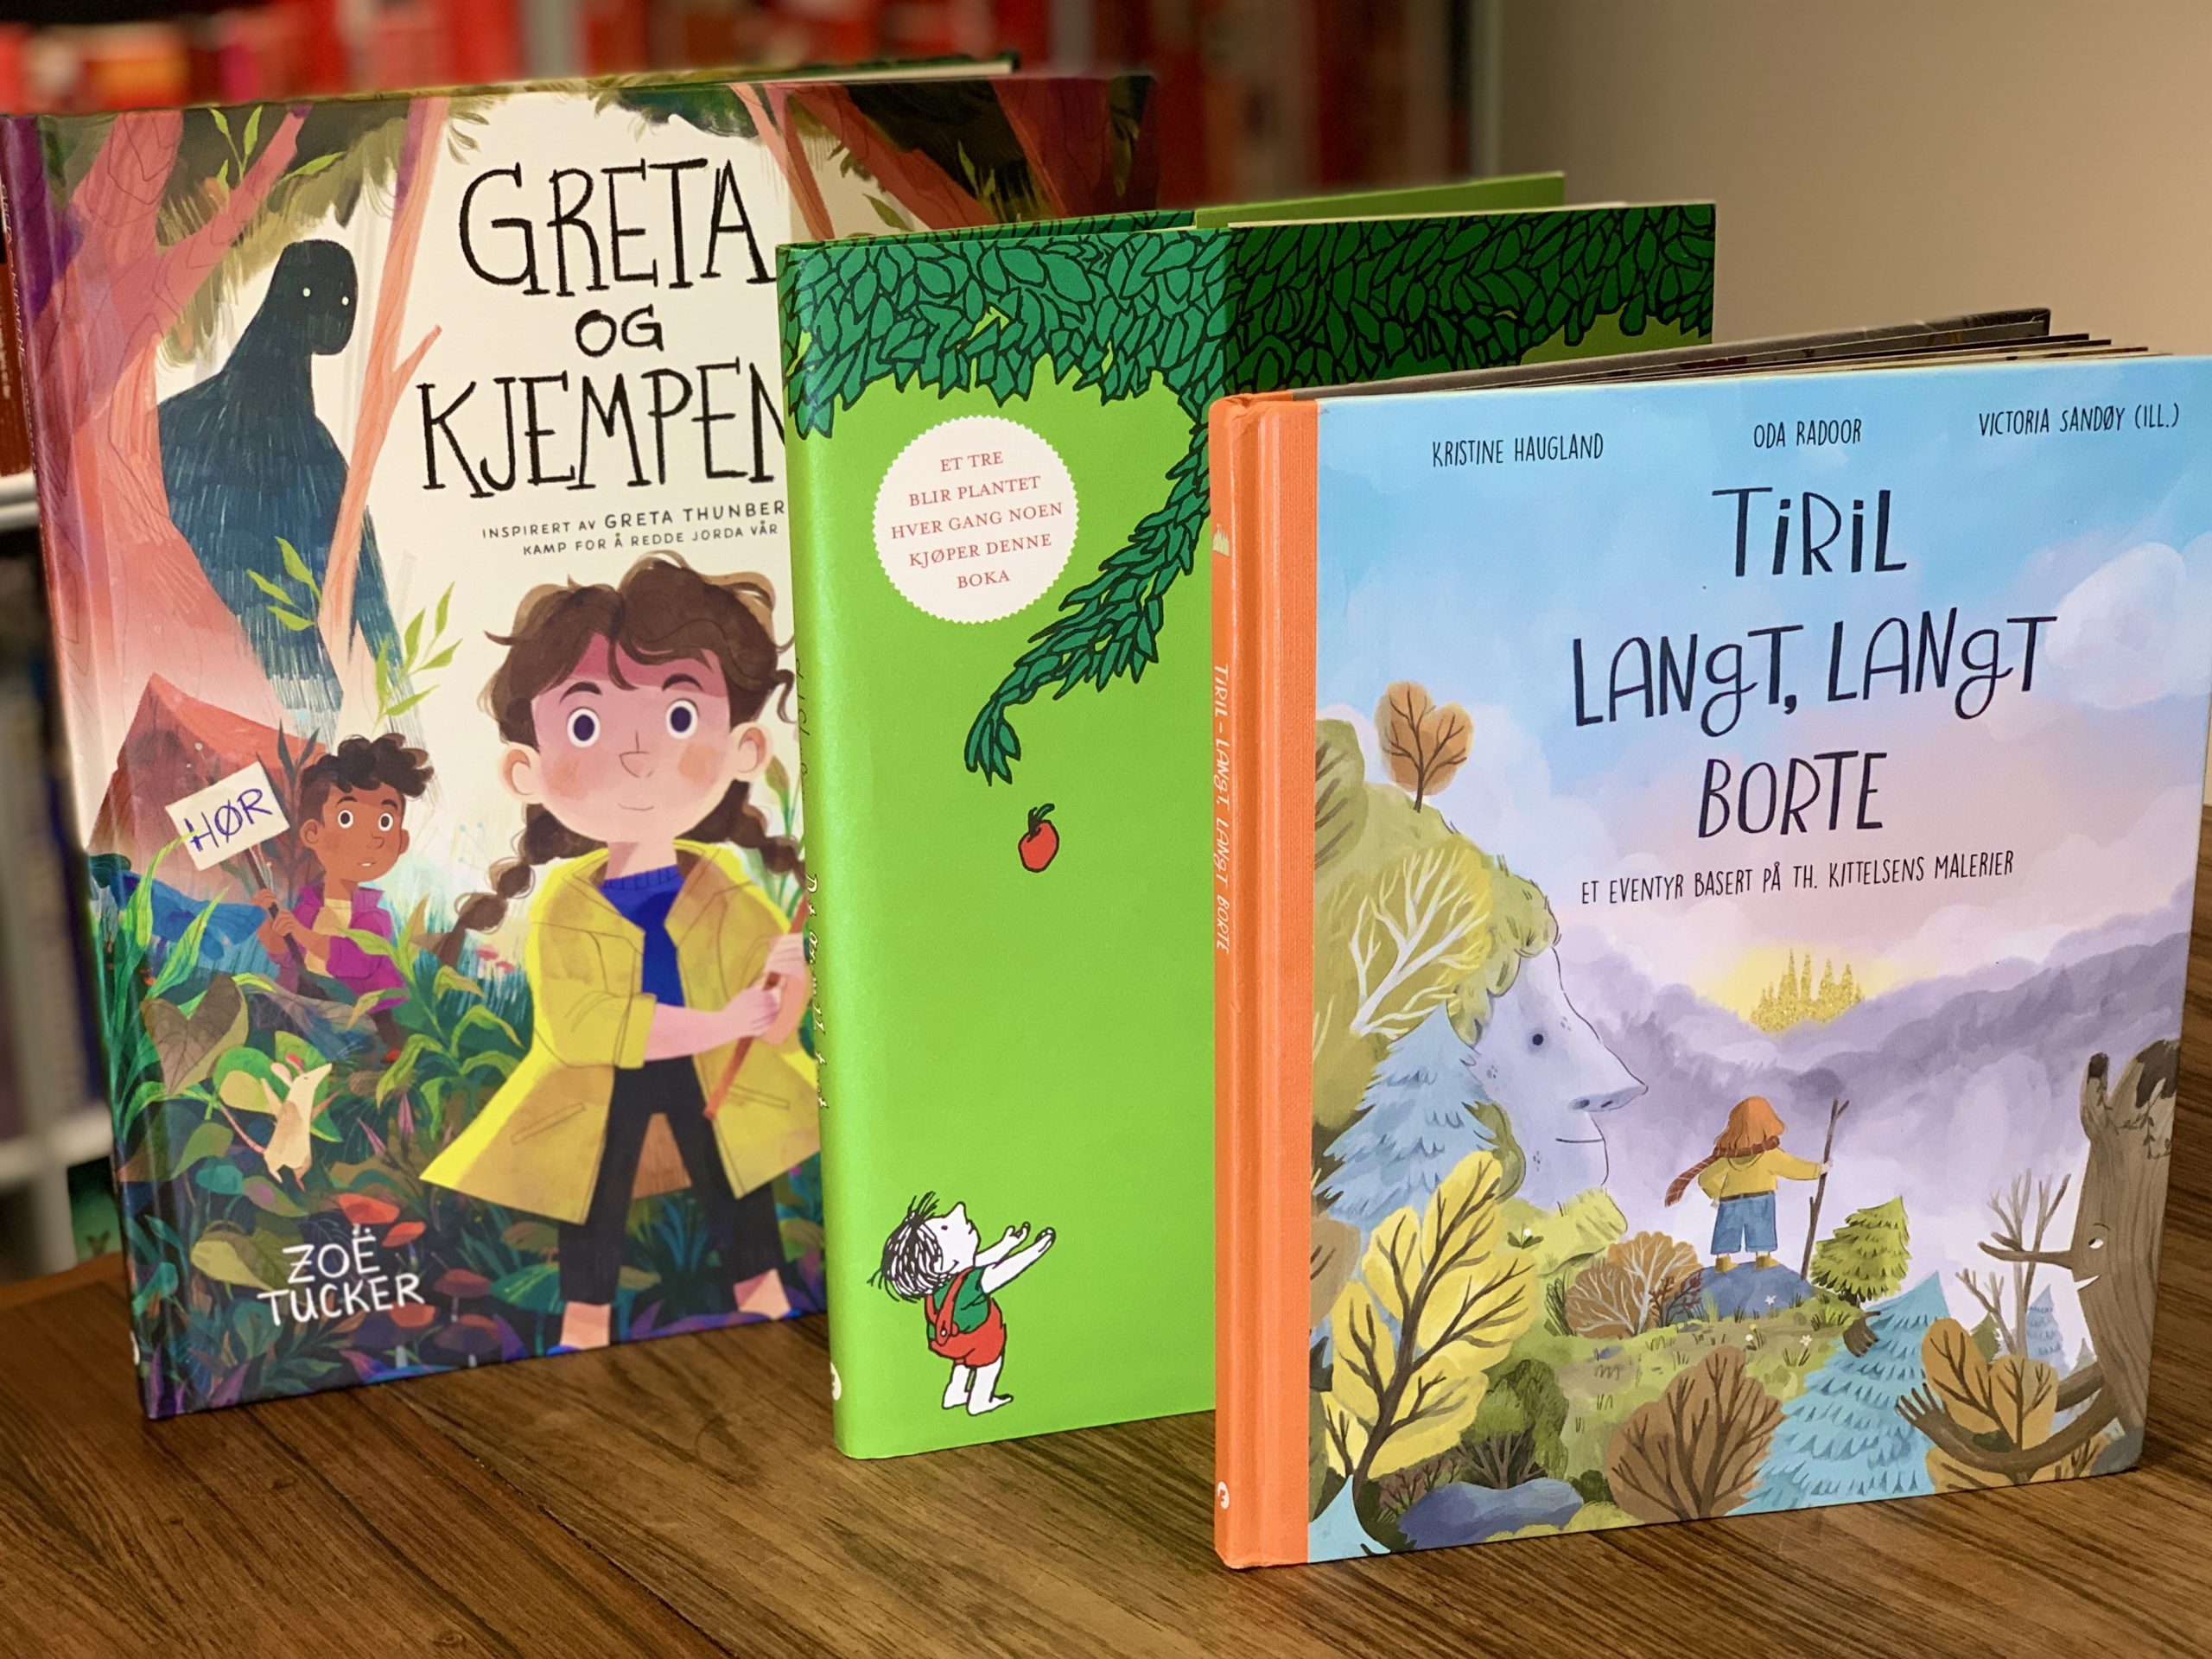 Barnebøker, bildebøker, eventyr, eventyrbøker, helter, heltinner, bestselgere, barneboktips, de beste barnebøkene, bøker for 4-åringen, bøker for 5-åringen, bøker for 6-åringen, bøker for 7-åringen, bursdagsgave, julegave, Greta Thunberg, miljøvern, Greenpeace, Miljøpartiet de grønne, Natur og ungdom, Framtiden i våre hender, teamtrees, Figenschou forlag, leseglede, leselyst, les for meg, Det finnes ingen planet B, klimabrølet, fabel, Shel Silverstein, Siri Nilsen, klassisker, amerikansk klassiker, Gutten og treet, Greta og kjempene, demonstrasjonstog, demonstrasjon, Th. Kittelsen, Nøkken, Soria Moria Slott, Troll.